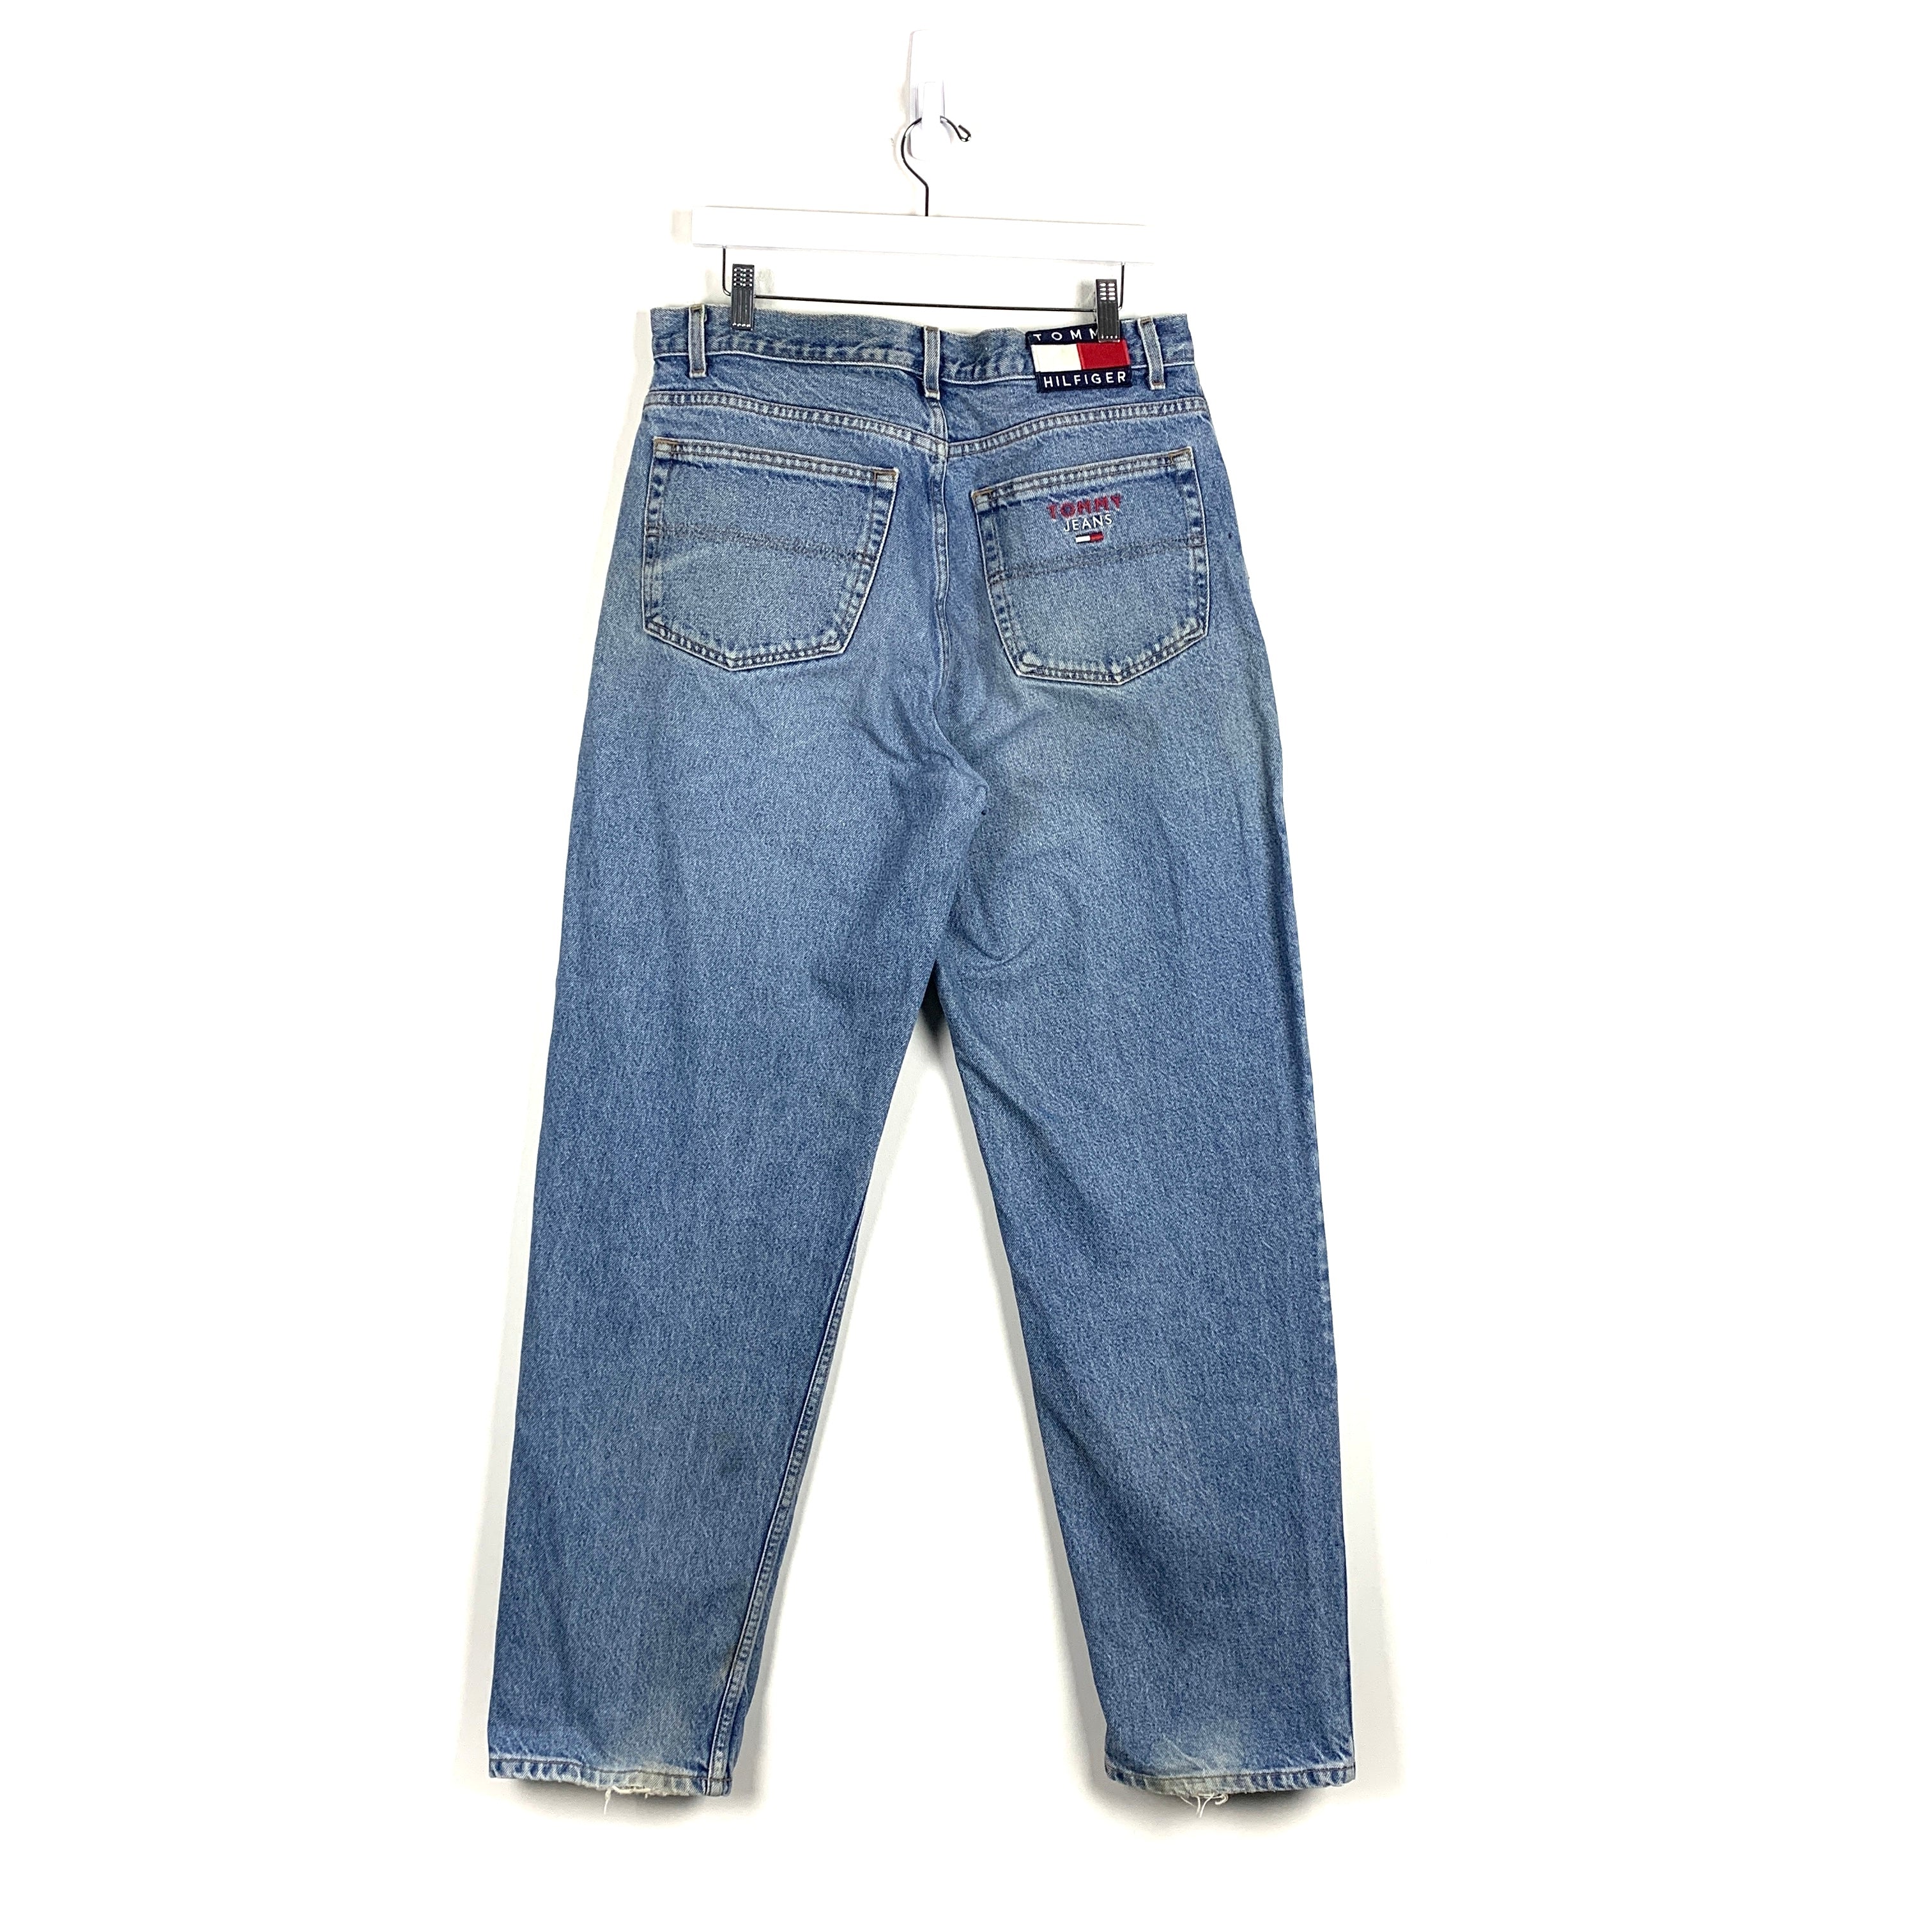 Vintage Tommy Hilfiger Jeans - Men's 34/34